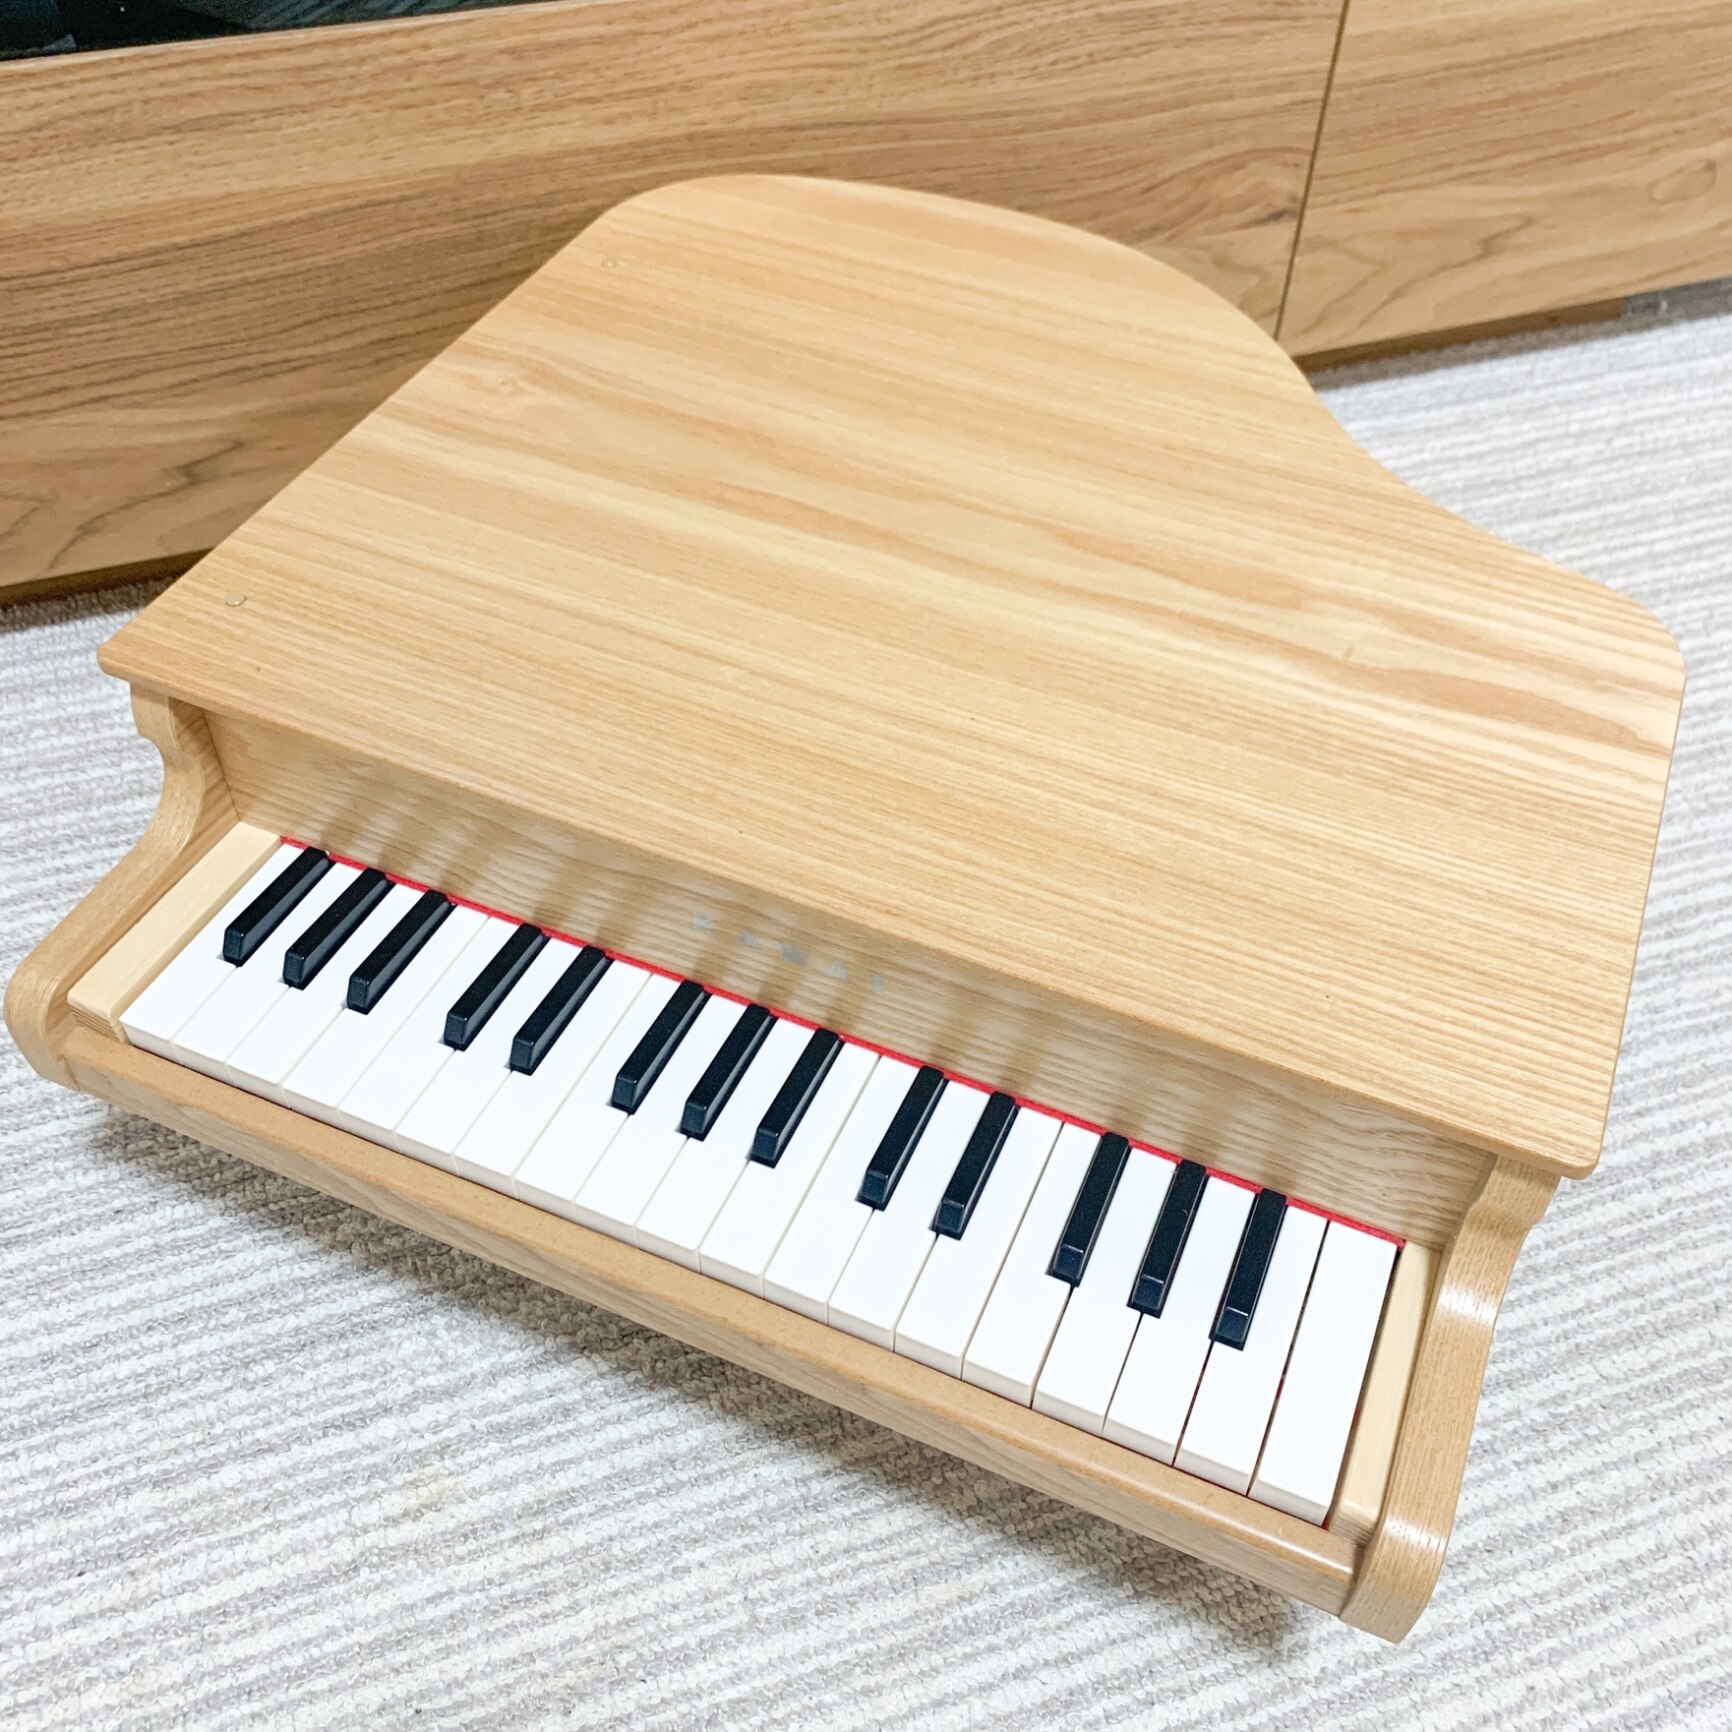 KAWAI 河合楽器製作所 グランドピアノ 木目調 タイプのカワイのミニ